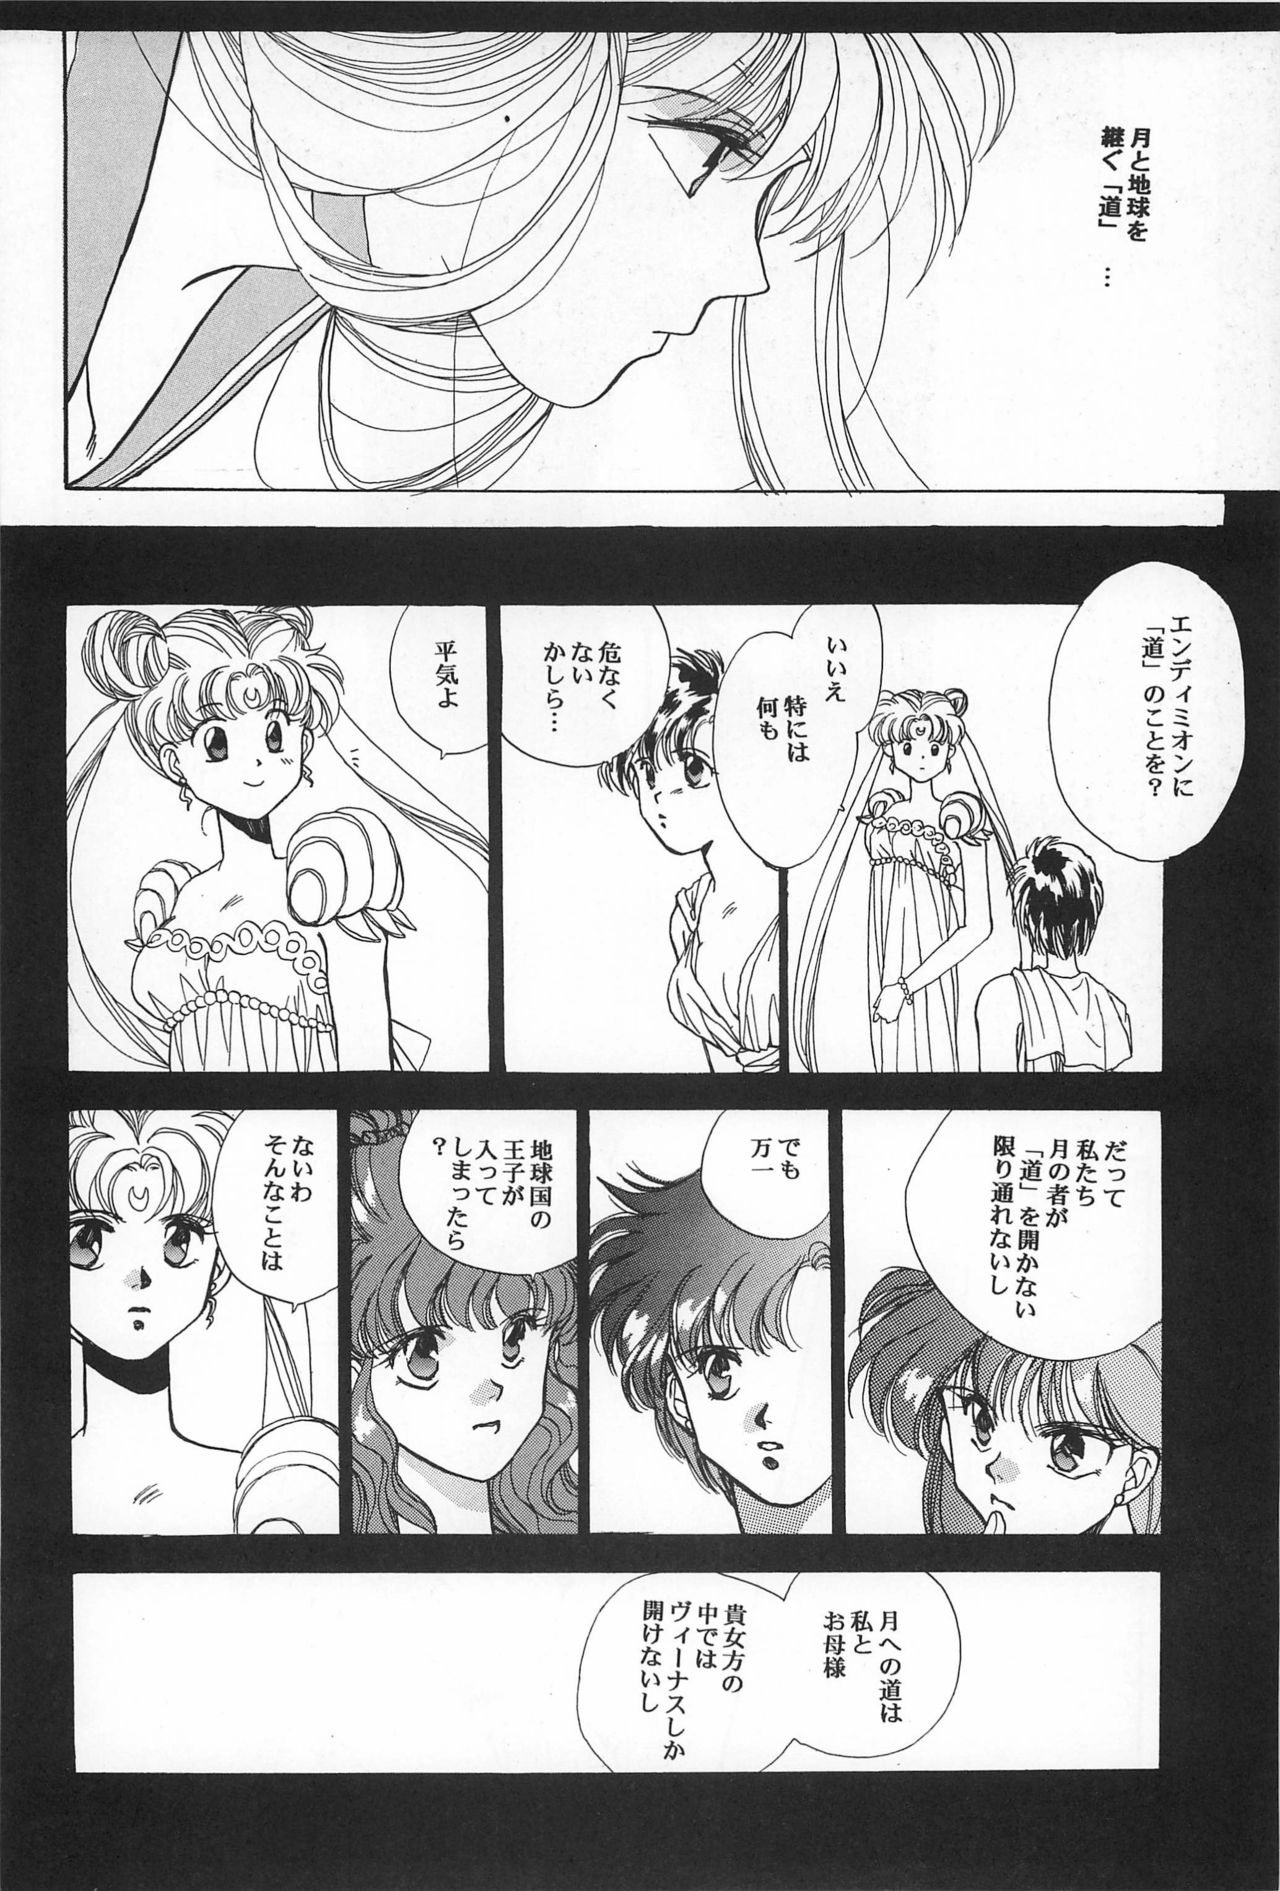 [Hello World (Muttri Moony)] Kaze no You ni Yume no You ni - Sailor Moon Collection (Sailor Moon) 65